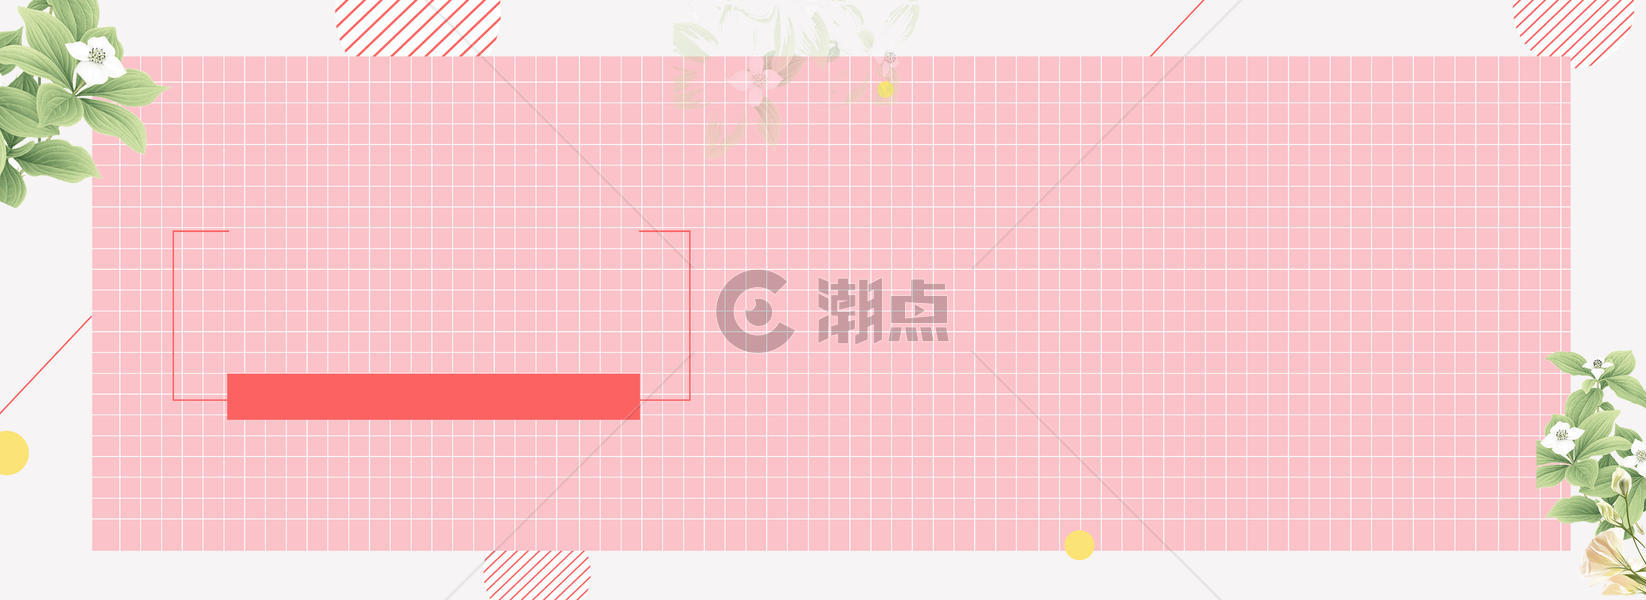 春夏新风尚banner海报背景图片素材免费下载